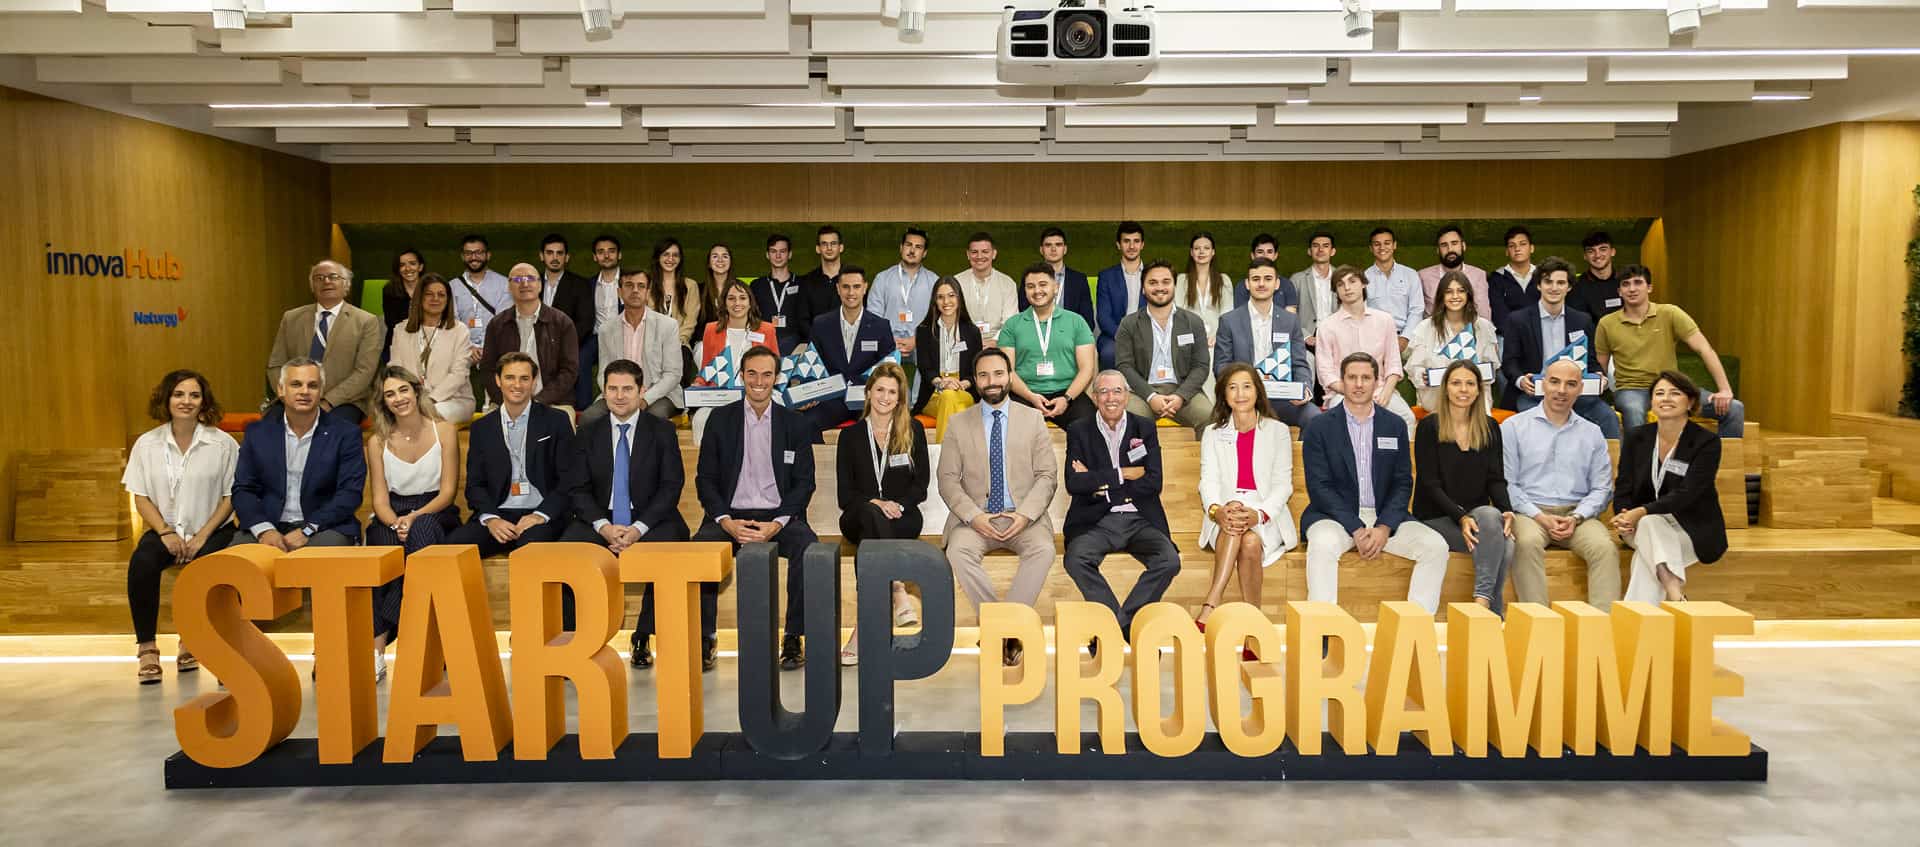 Futura de la Universidad Alcalá de Henares representará a España en la competición europea Gen-E tras convertirse en el ganador de la XIV Competición nacional de Startup Programme